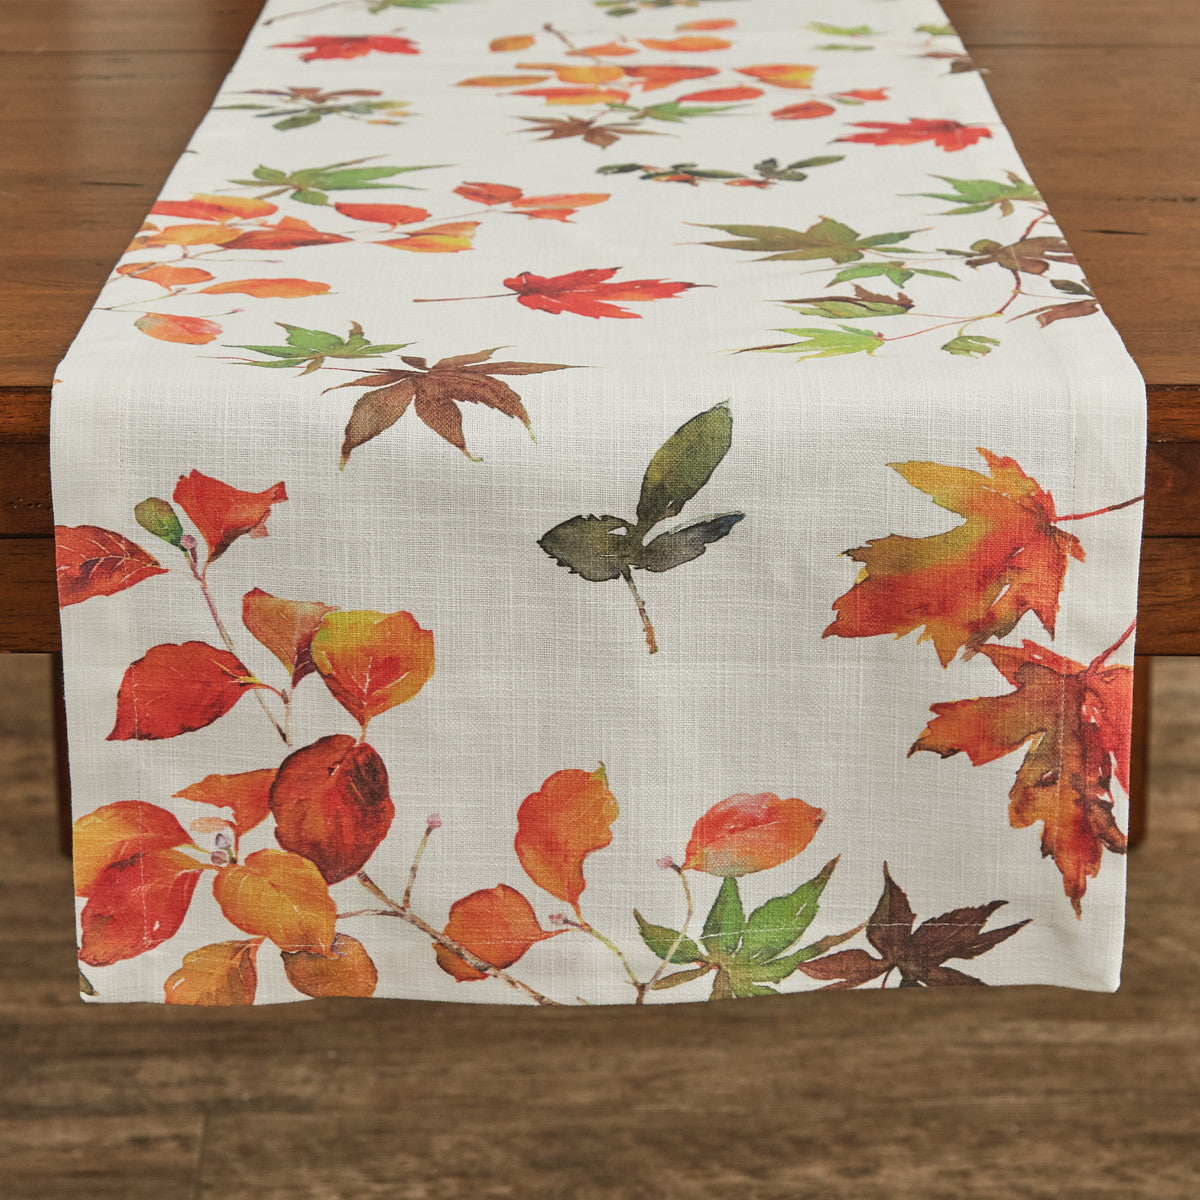 Falling Leaves Table Runner - 15x72 Park Designs